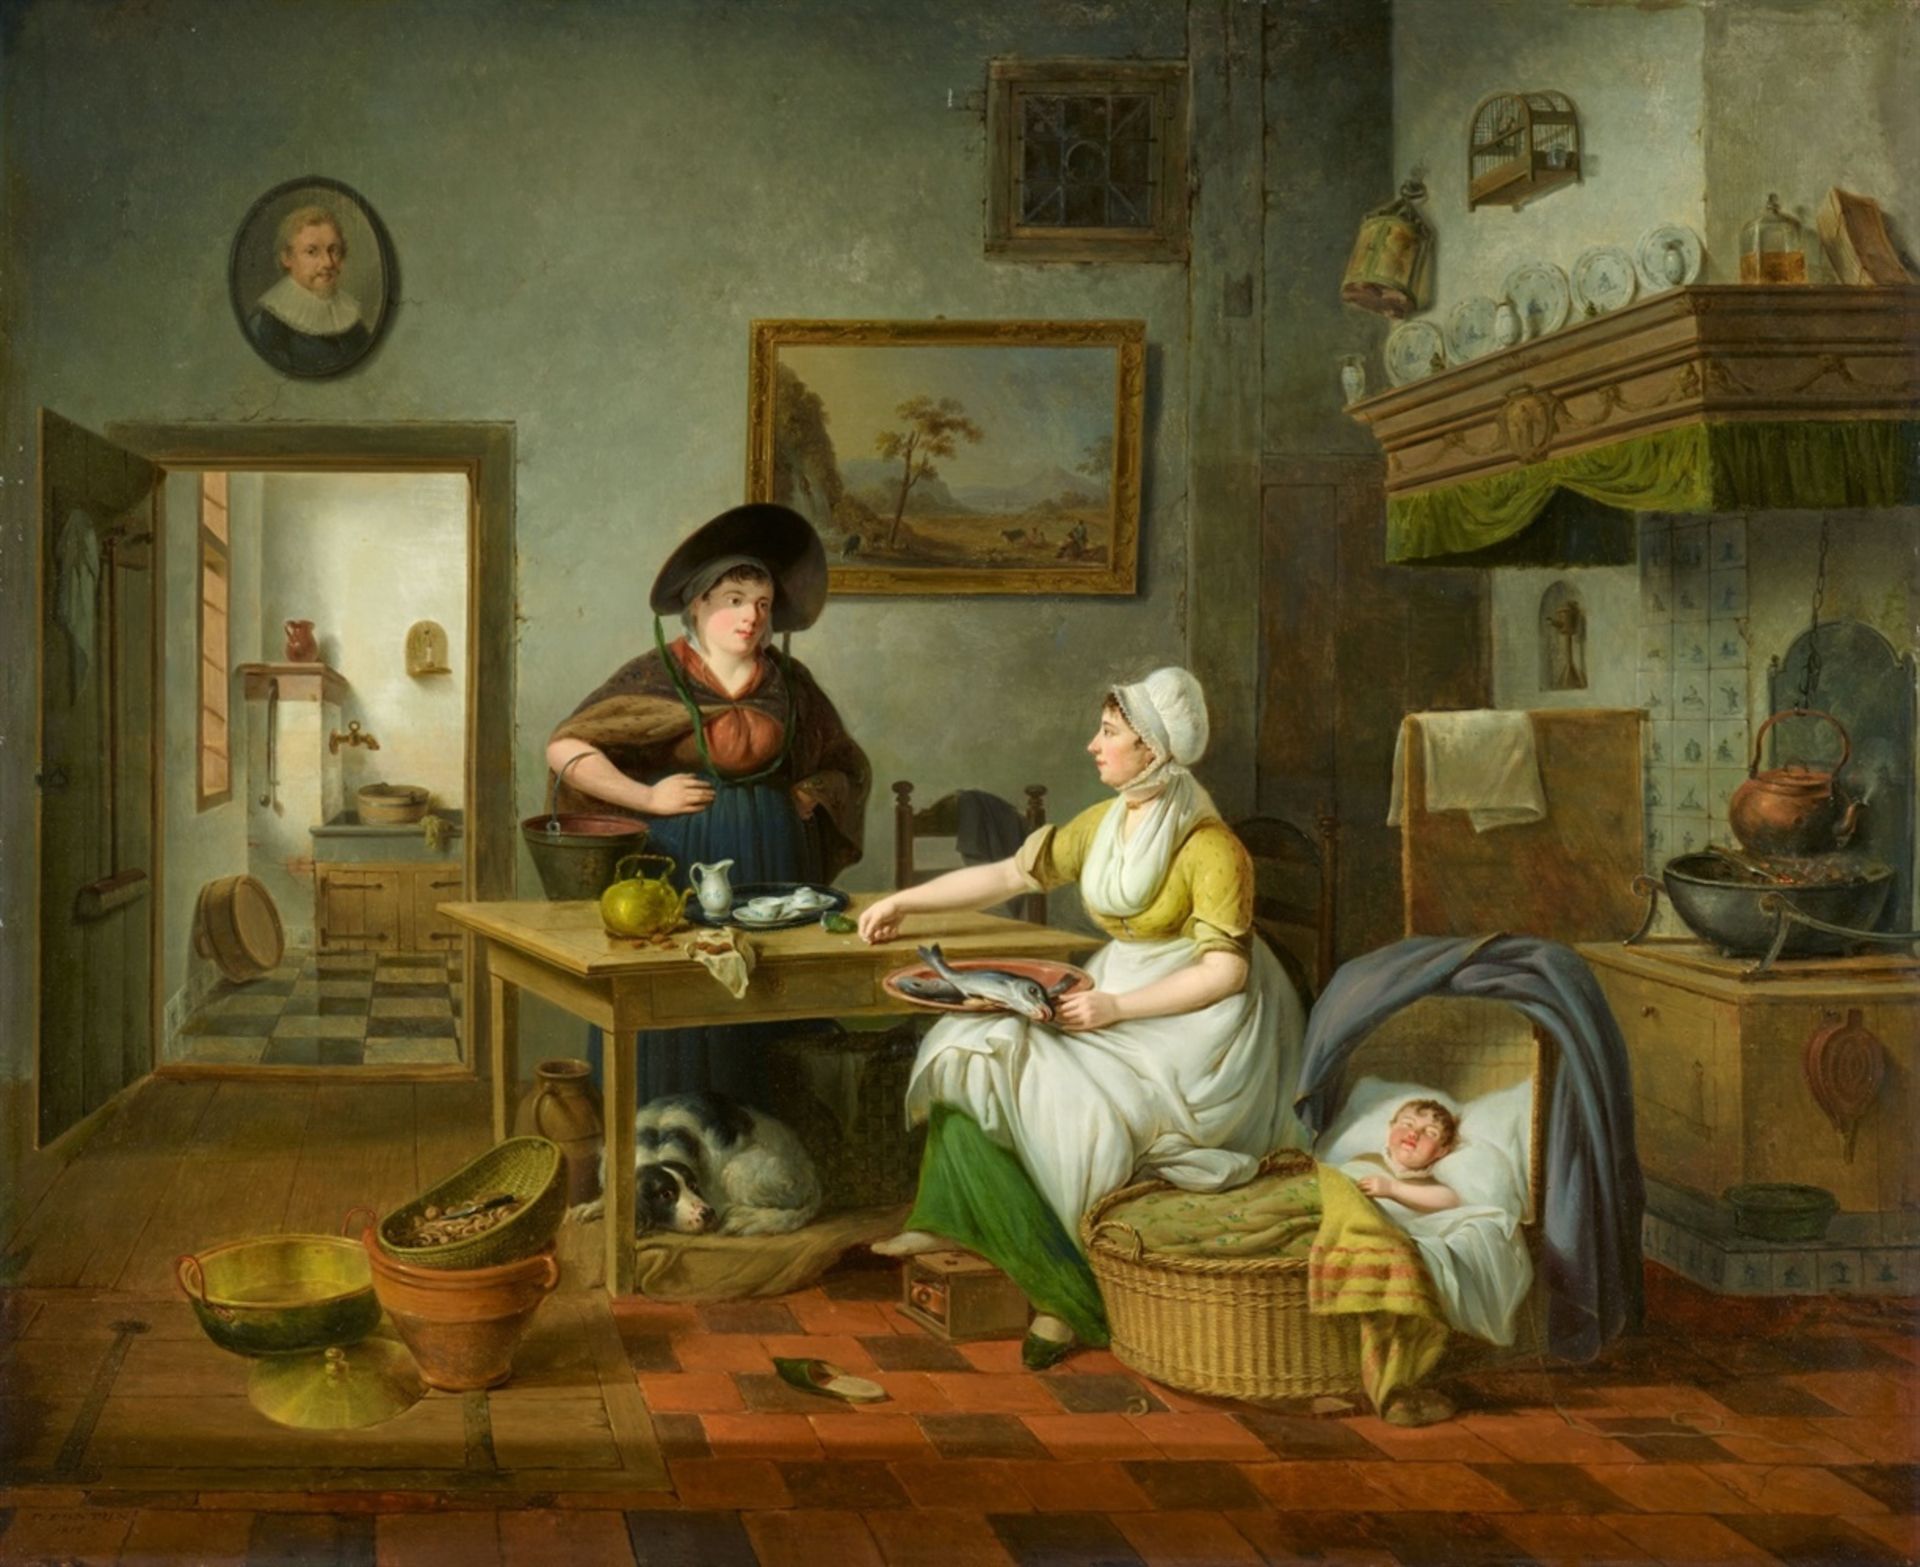 Pieter FonteynKücheninterieur mit zwei Frauen und einem schlafenden Kind in geflochtener Kor